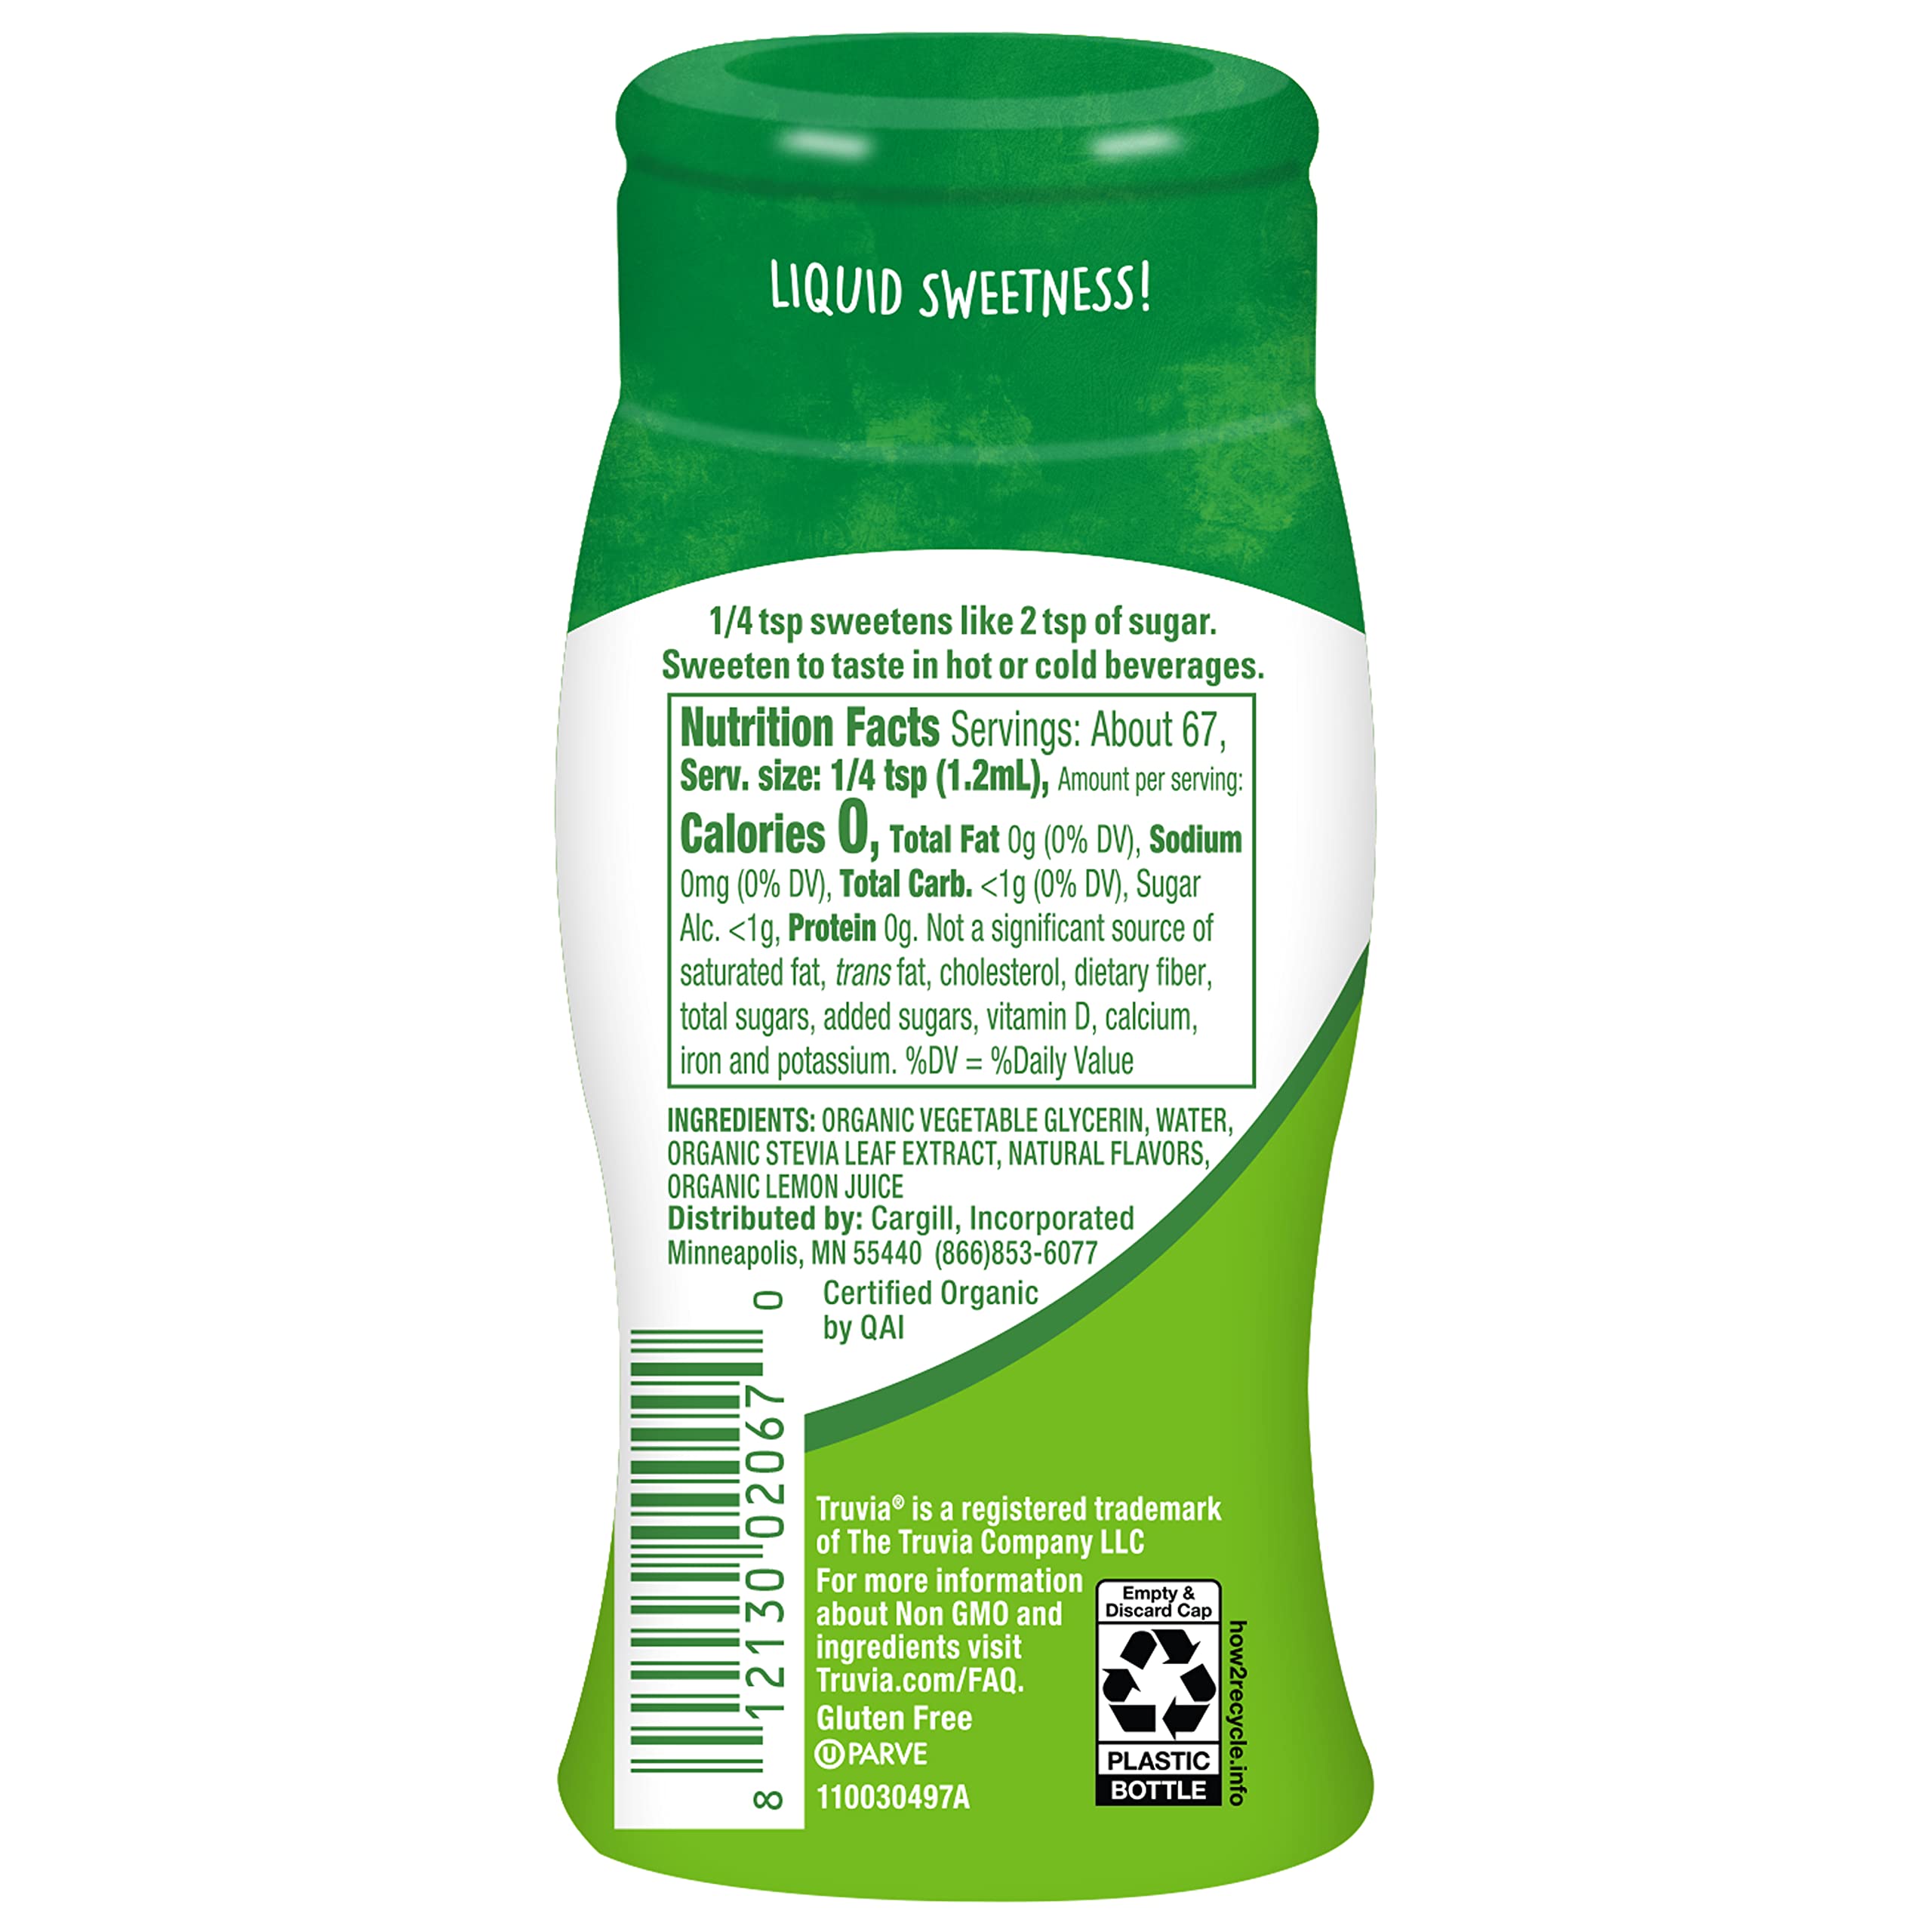 Truvia Organic Zero Calorie Liquid Stevia Sweetener Bottle, Original flavor, 2.7 fl. oz.